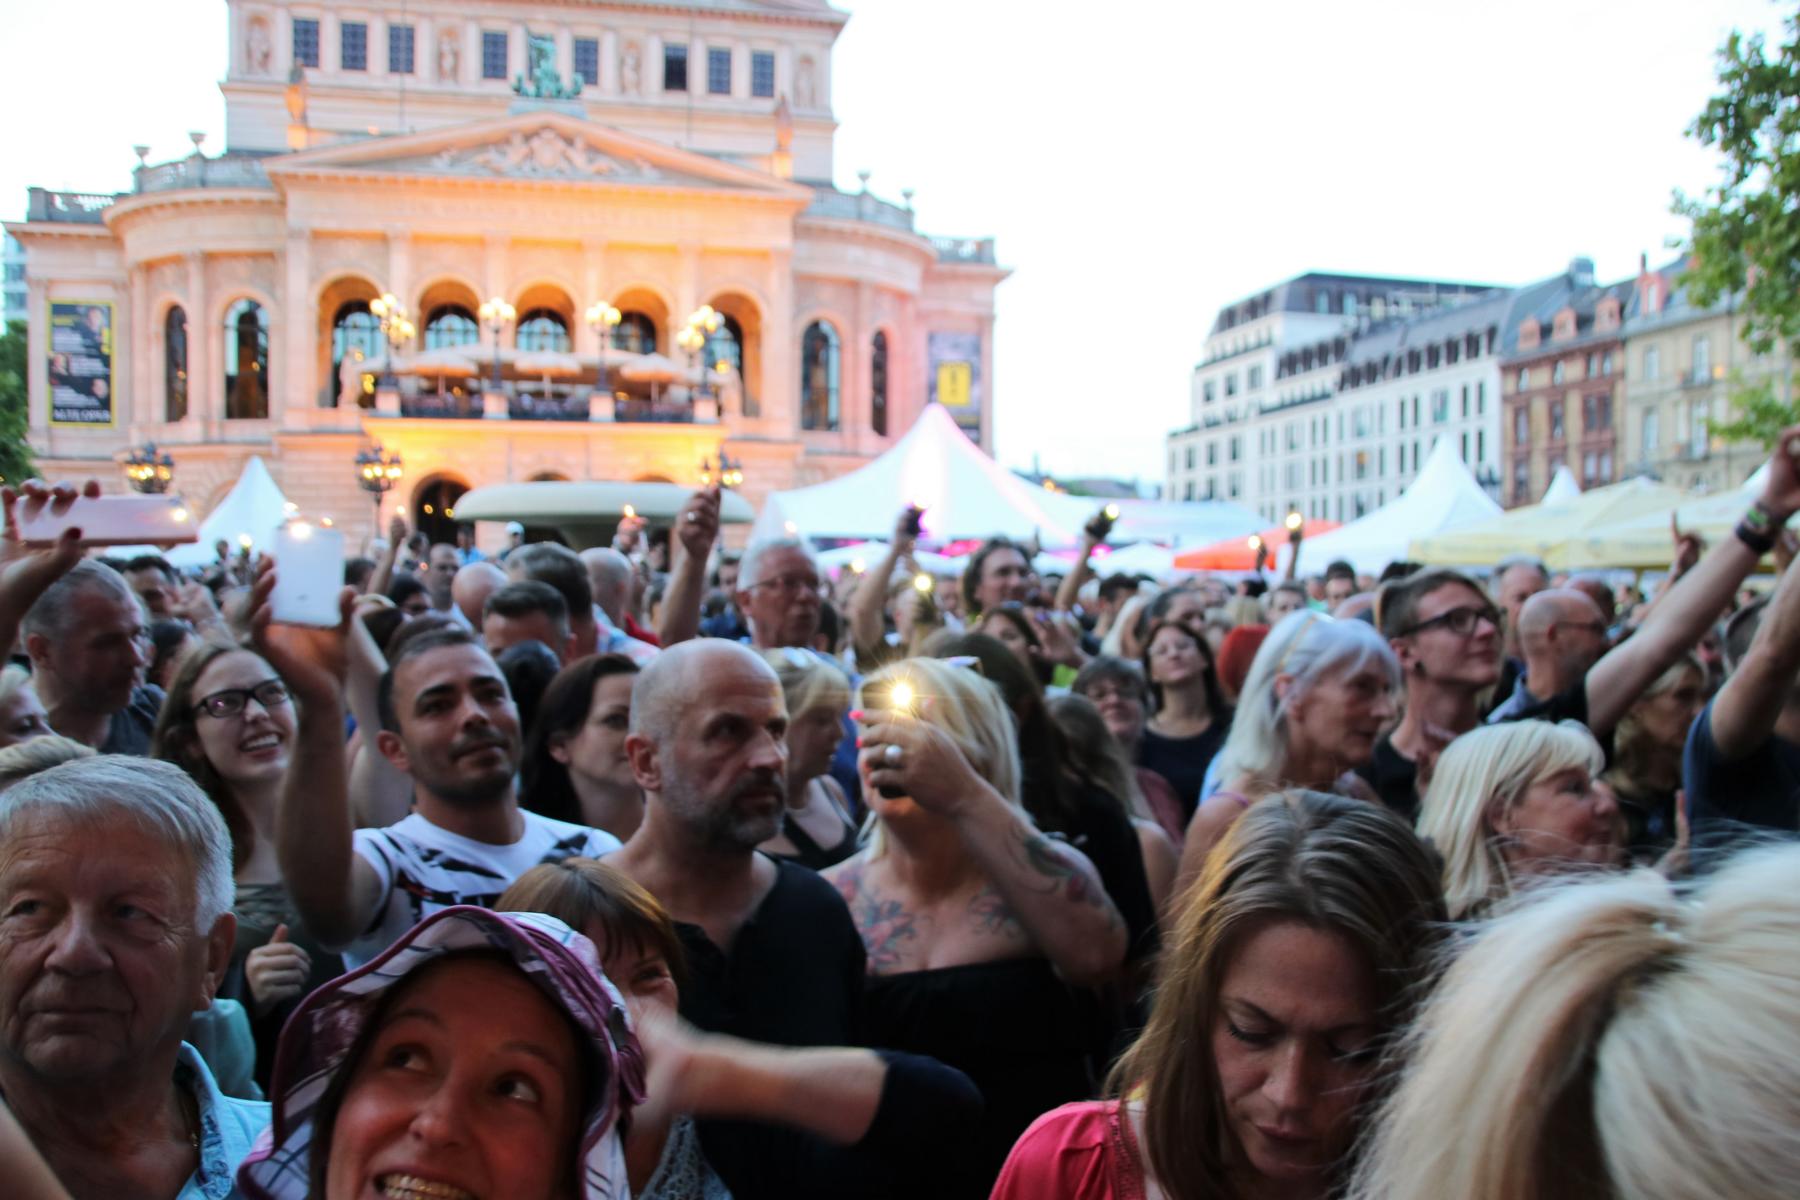 FOTOS: 2019-07-04 Opernplatzfest< >